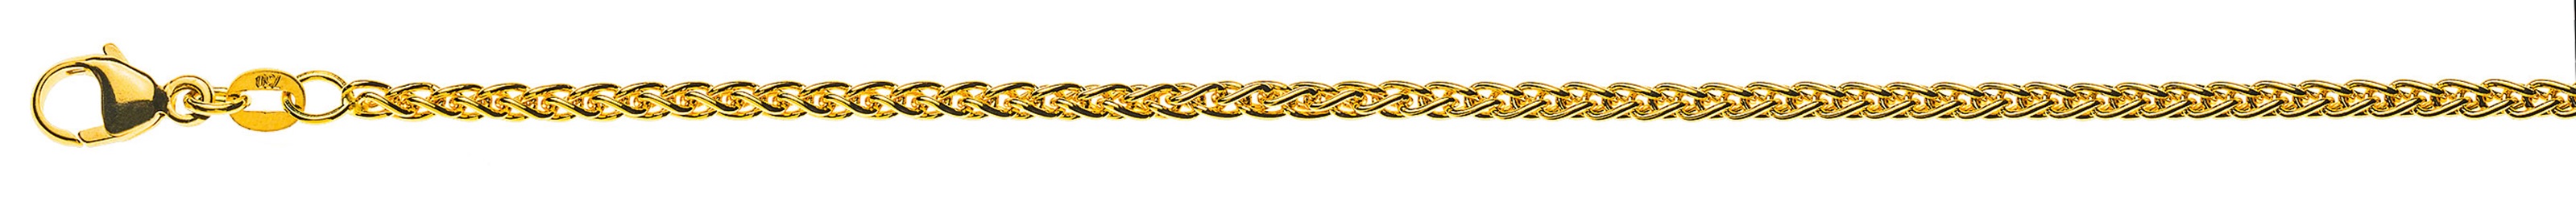 AURONOS Prestige Halskette Gelbgold 18K Zopfkette 60cm 2.5mm